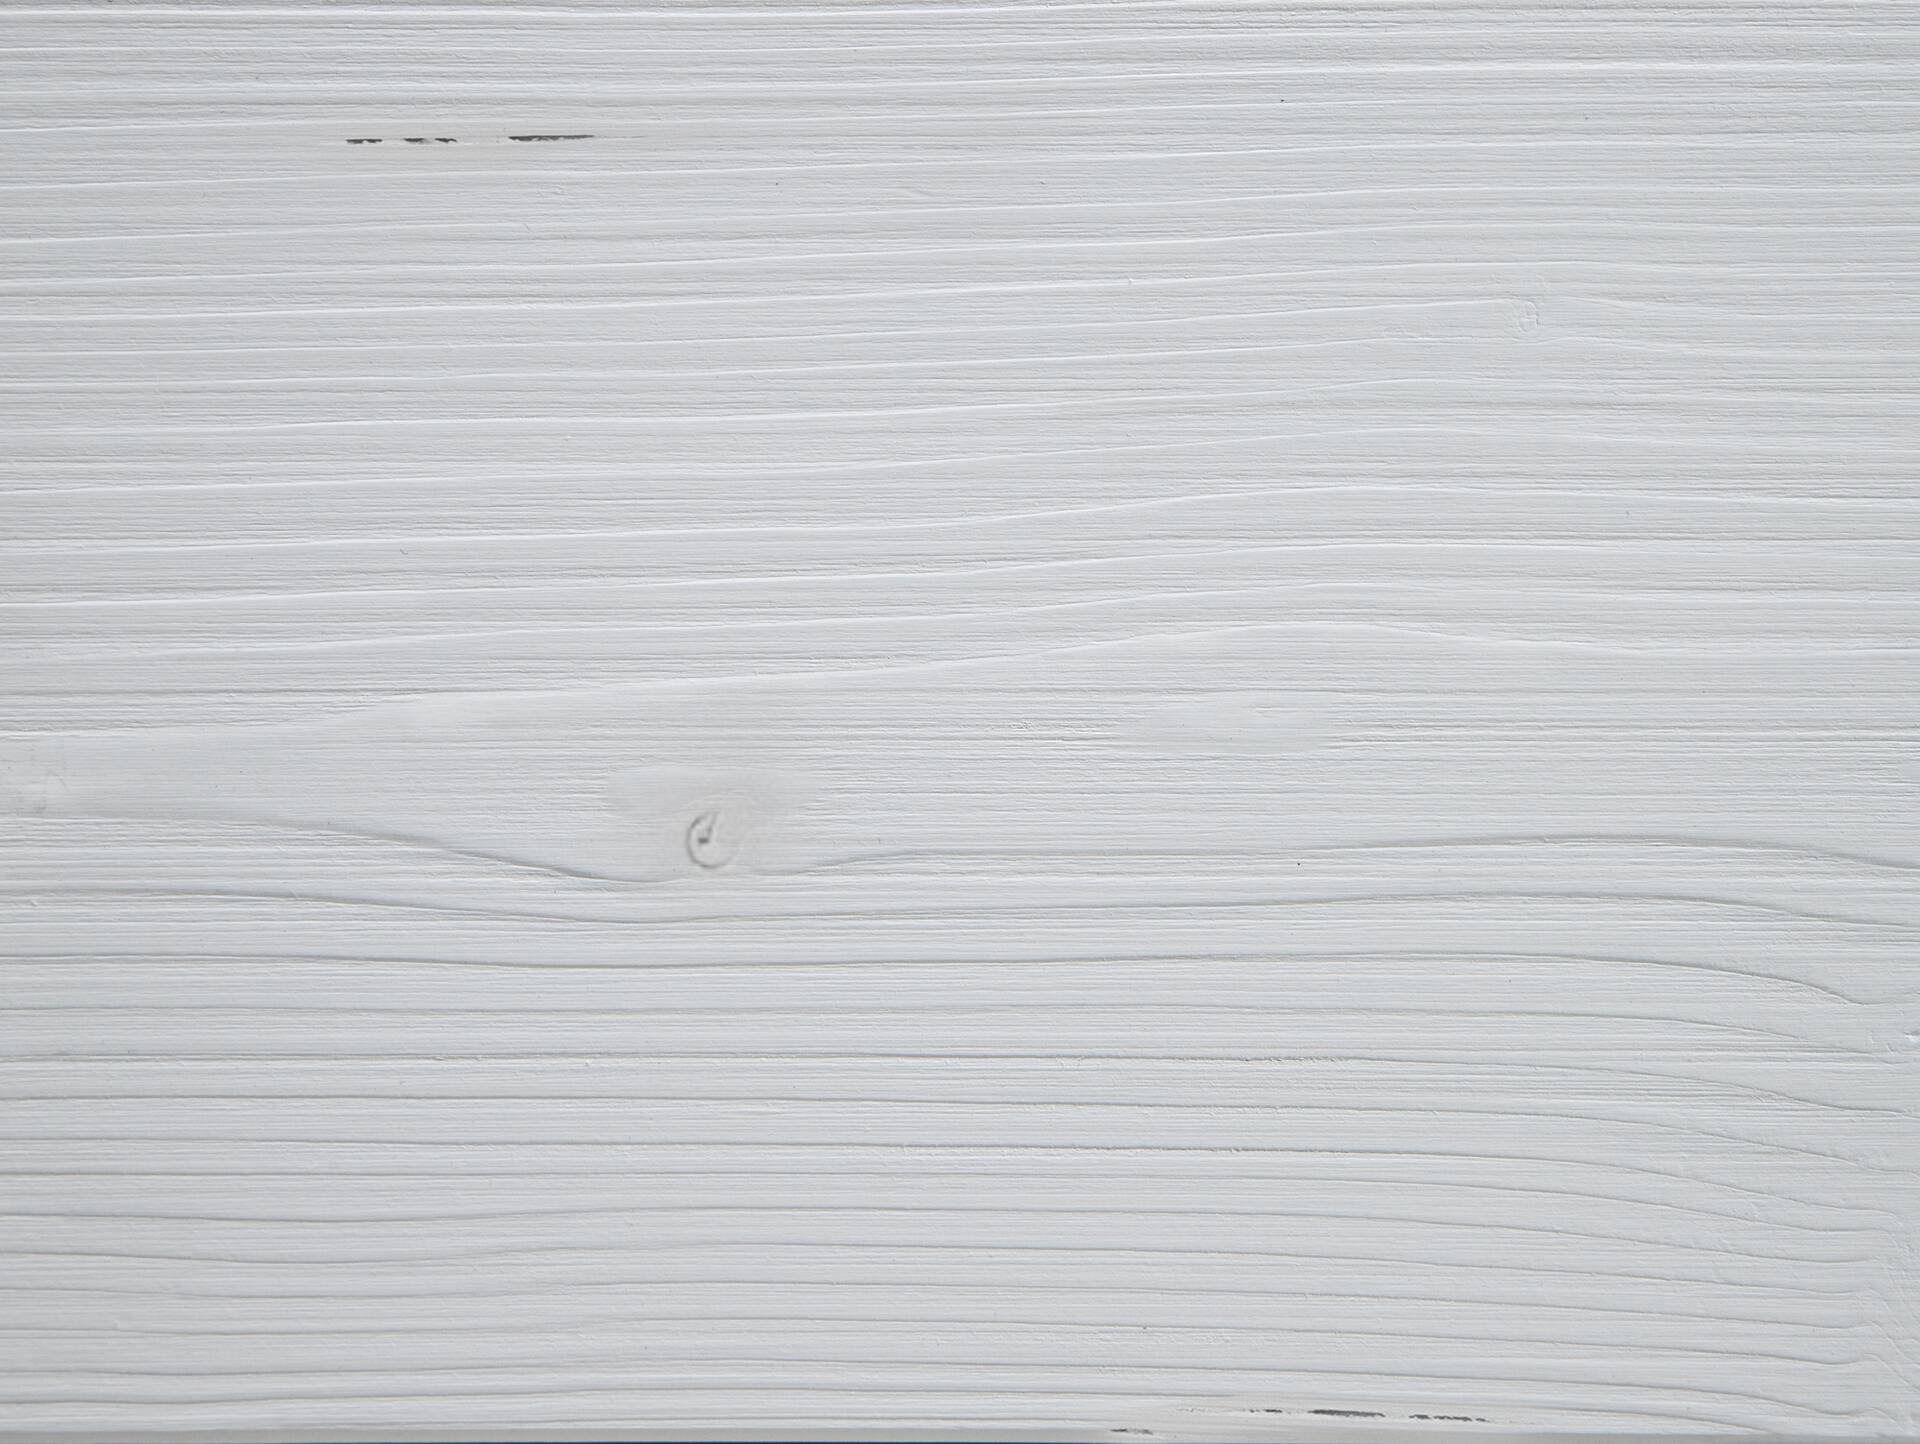 LUKY Kufenbett mit Polsterkopfteil, Material Massivholz, Fichte massiv, Kufen schwarz 140 x 220 cm | Kunstleder Schwarz